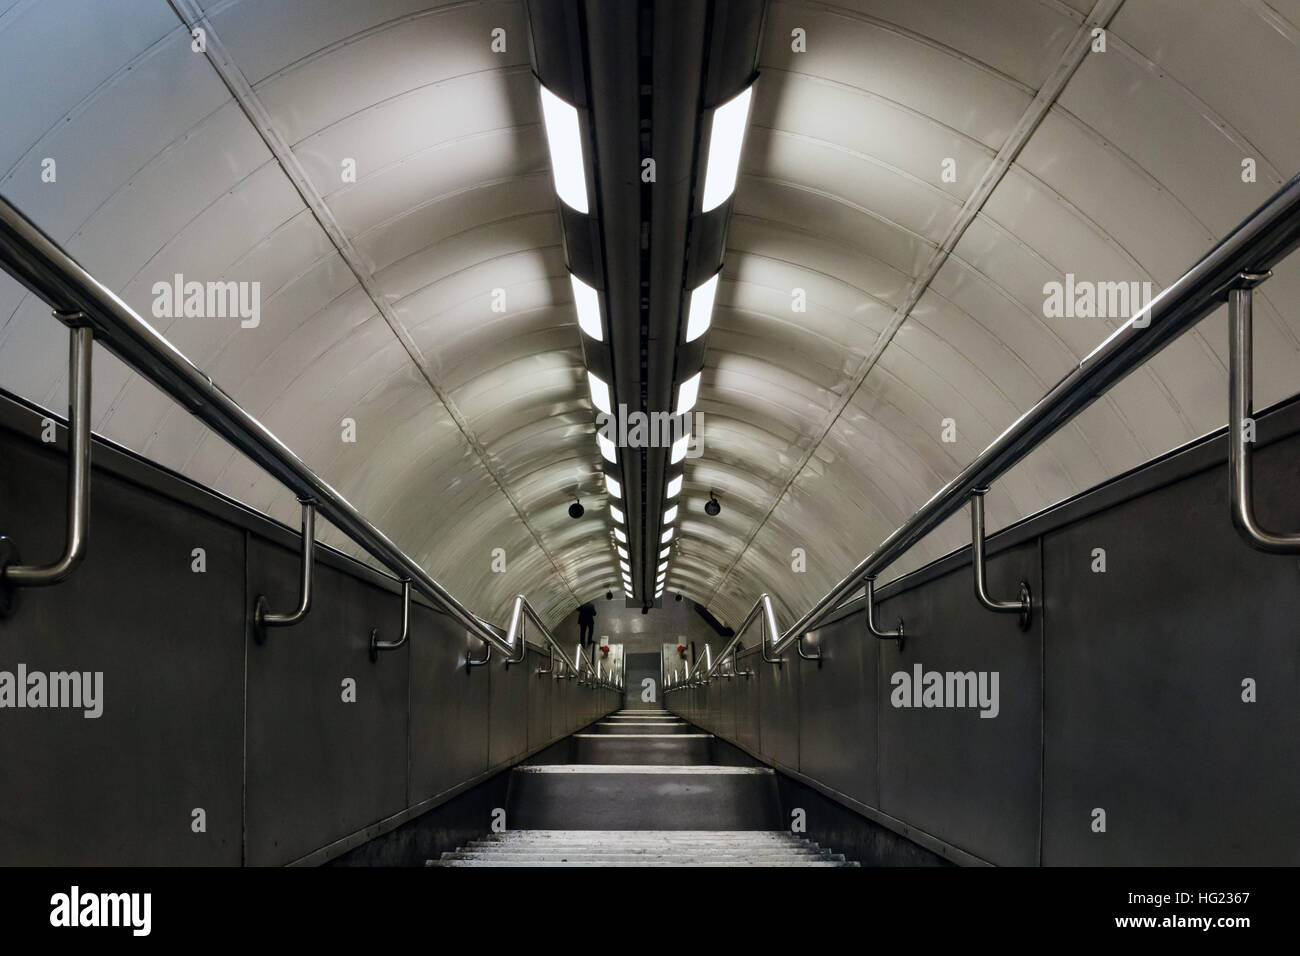 Londres, UK - 5 octobre 2016, passage descendant dans le métro de Londres Banque D'Images